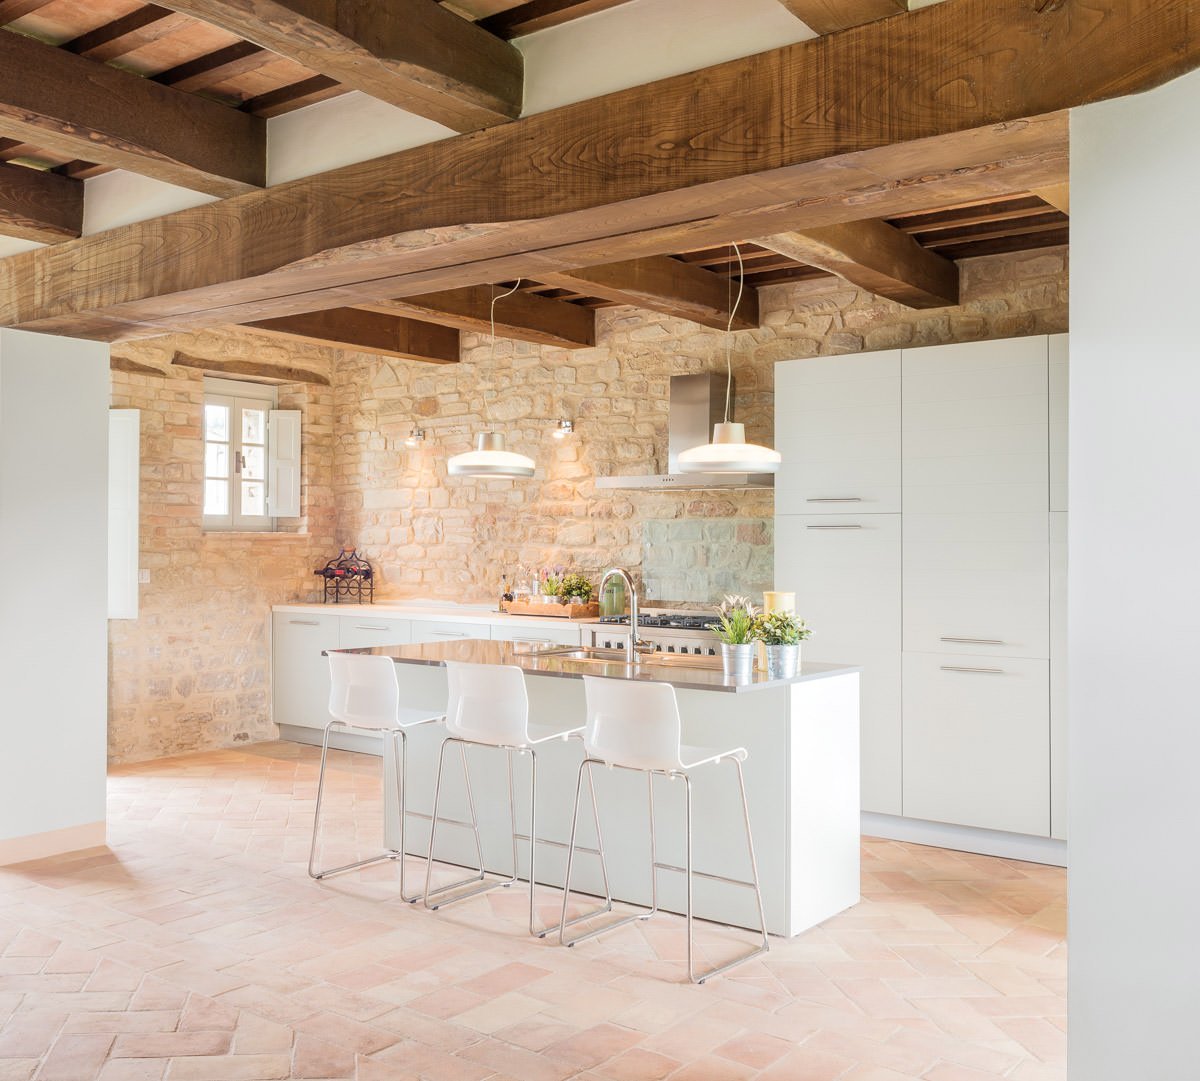 Cucina rustica moderna con pavimento in cotto, mobili in laminato bianco e travi in legno - idee piastrelle cucine rustiche moderne